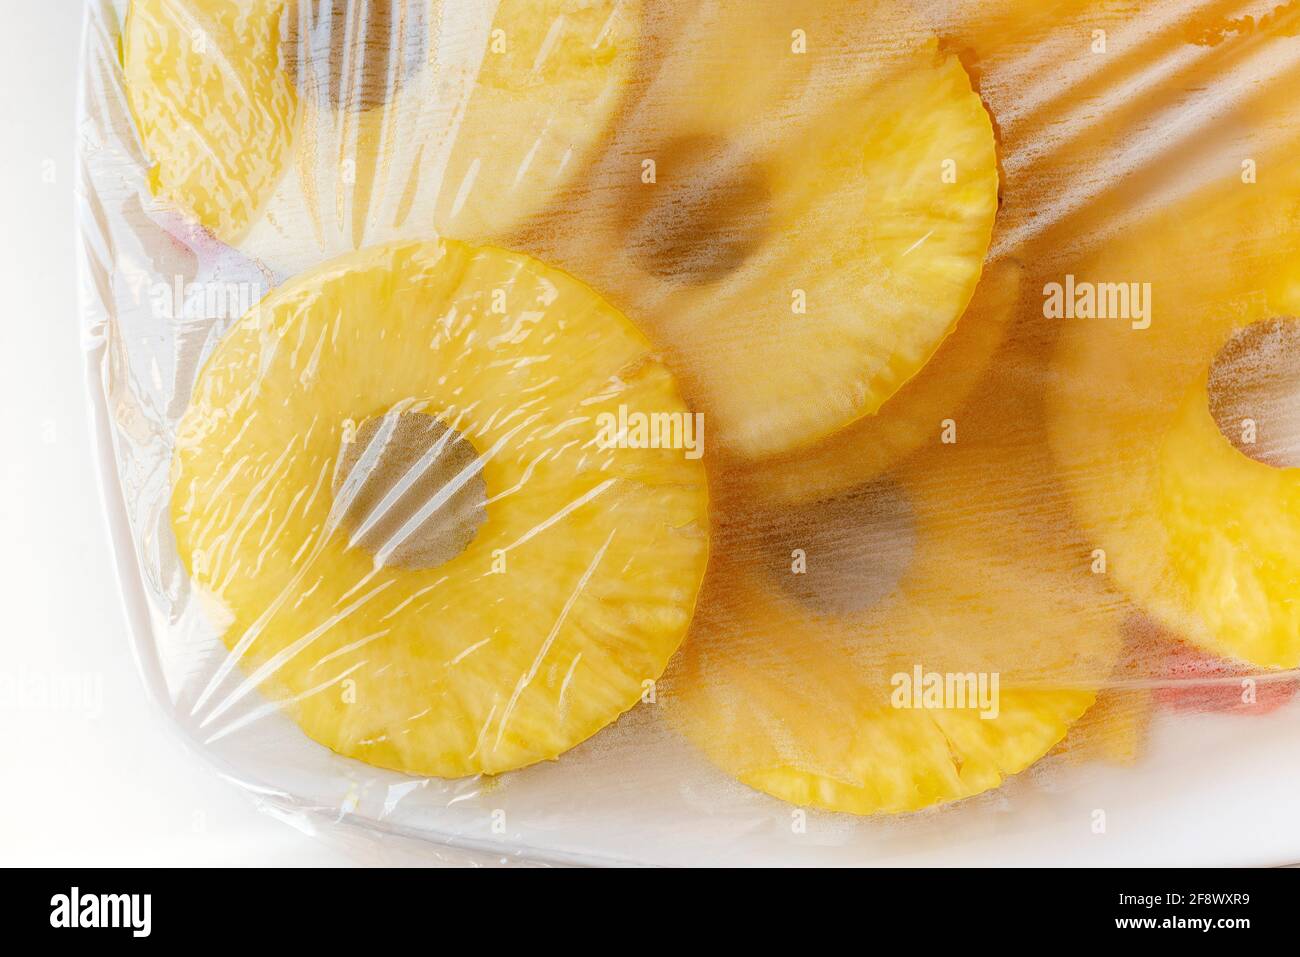 Tranches d'Ananas fraîches d'ananas recouvertes d'un emballage en plastique Banque D'Images